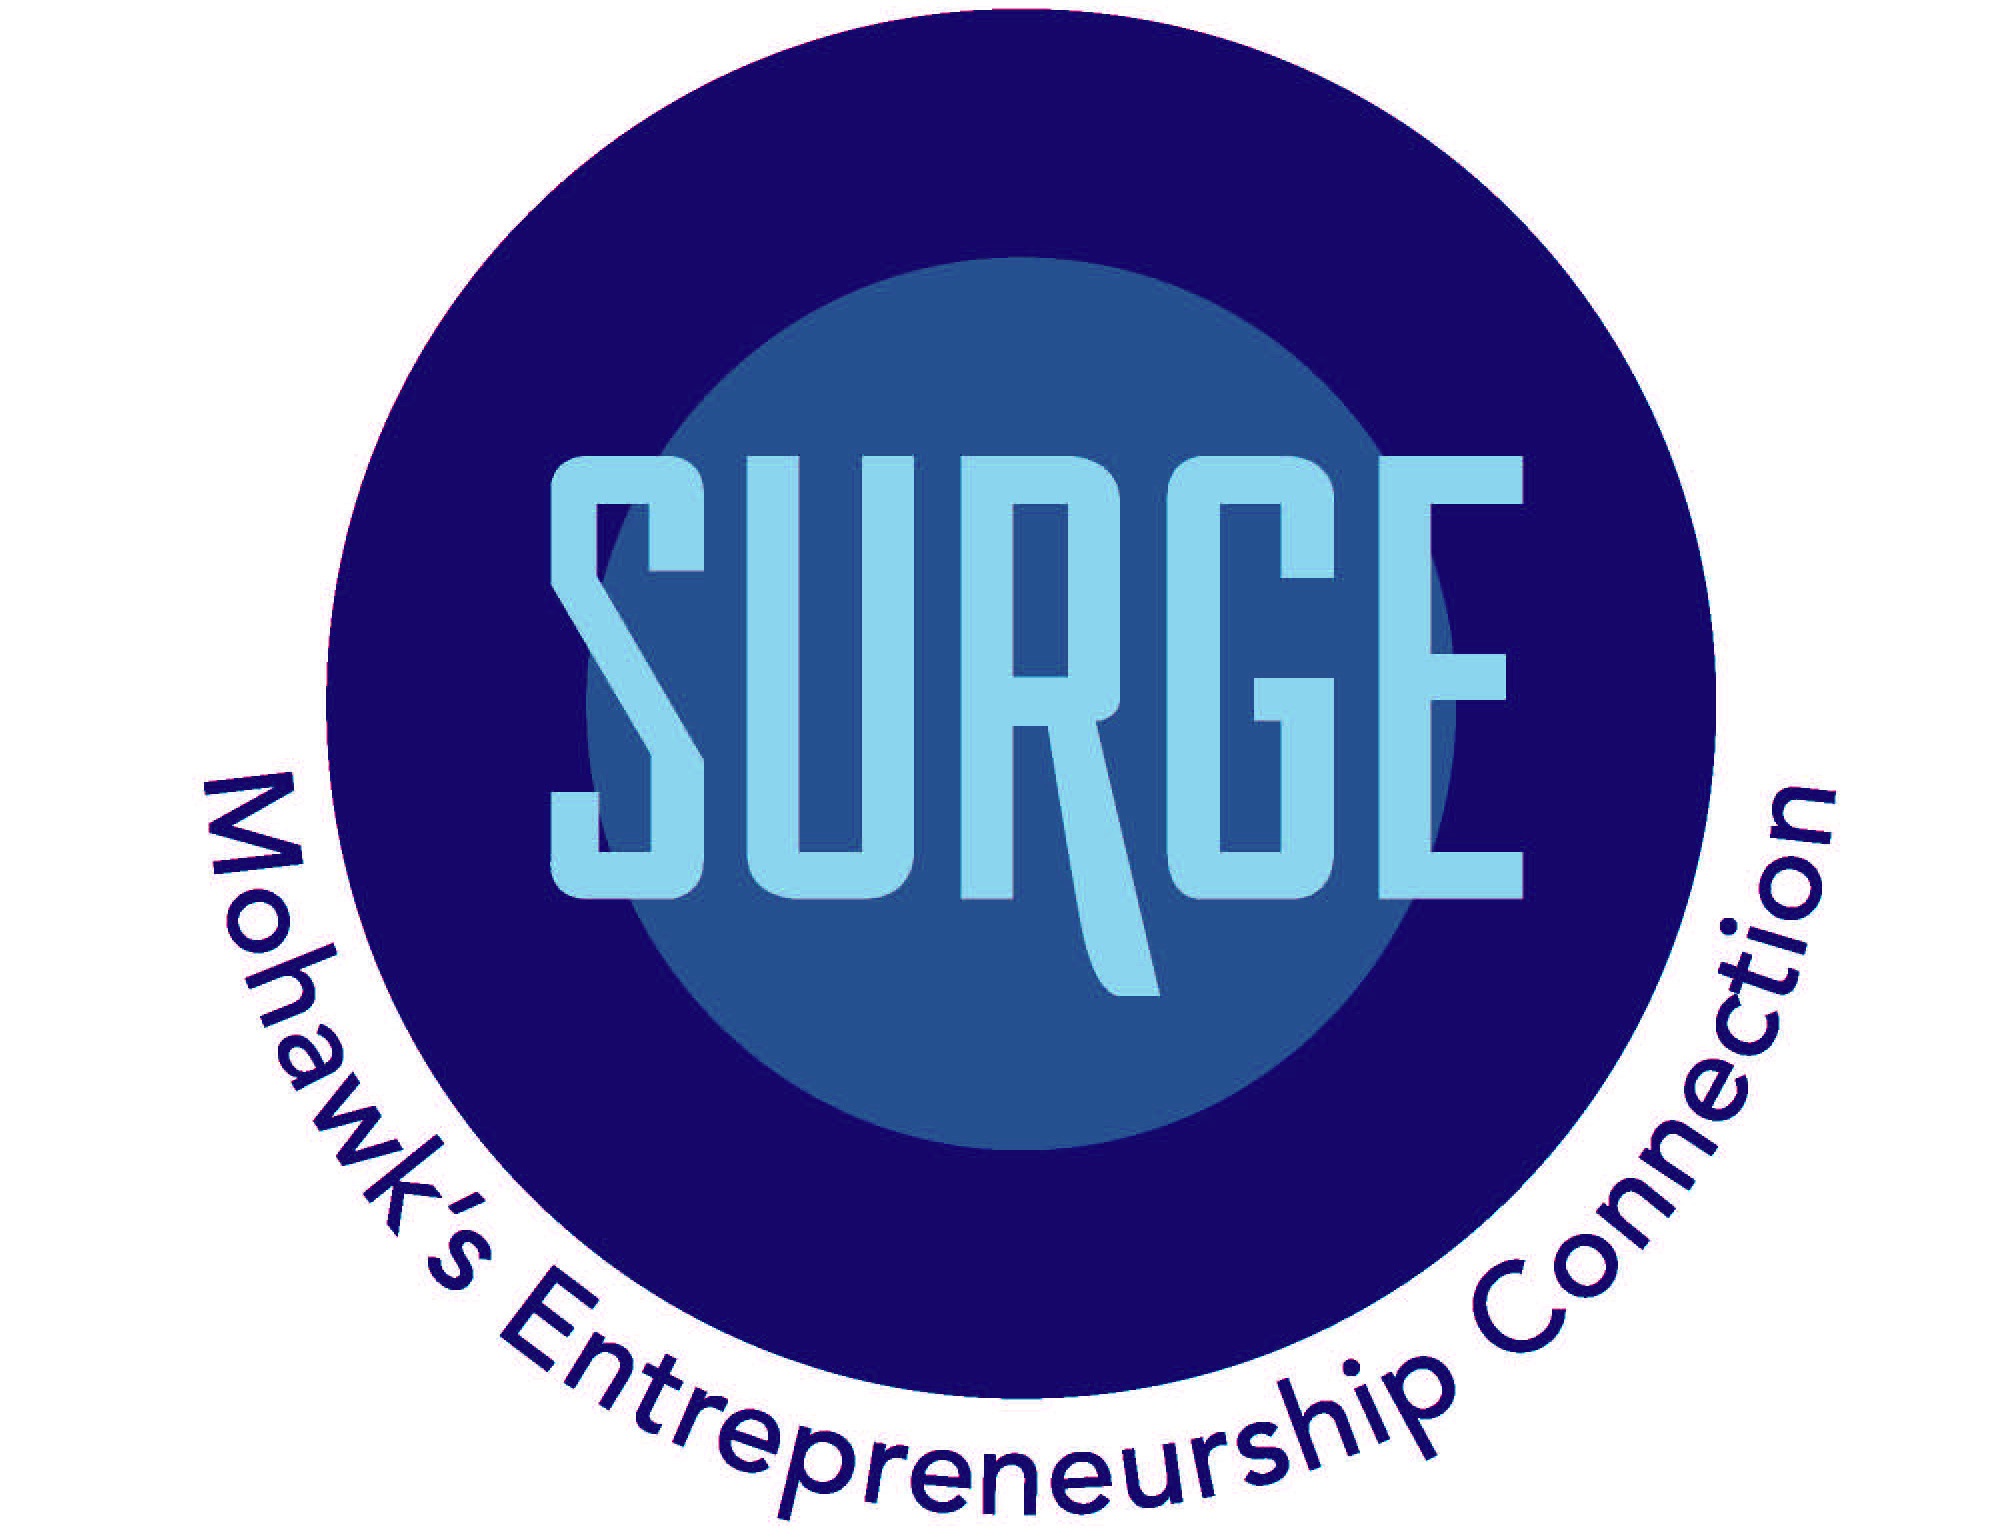 SURGE: Mohawk's Entrepreneurship Connection